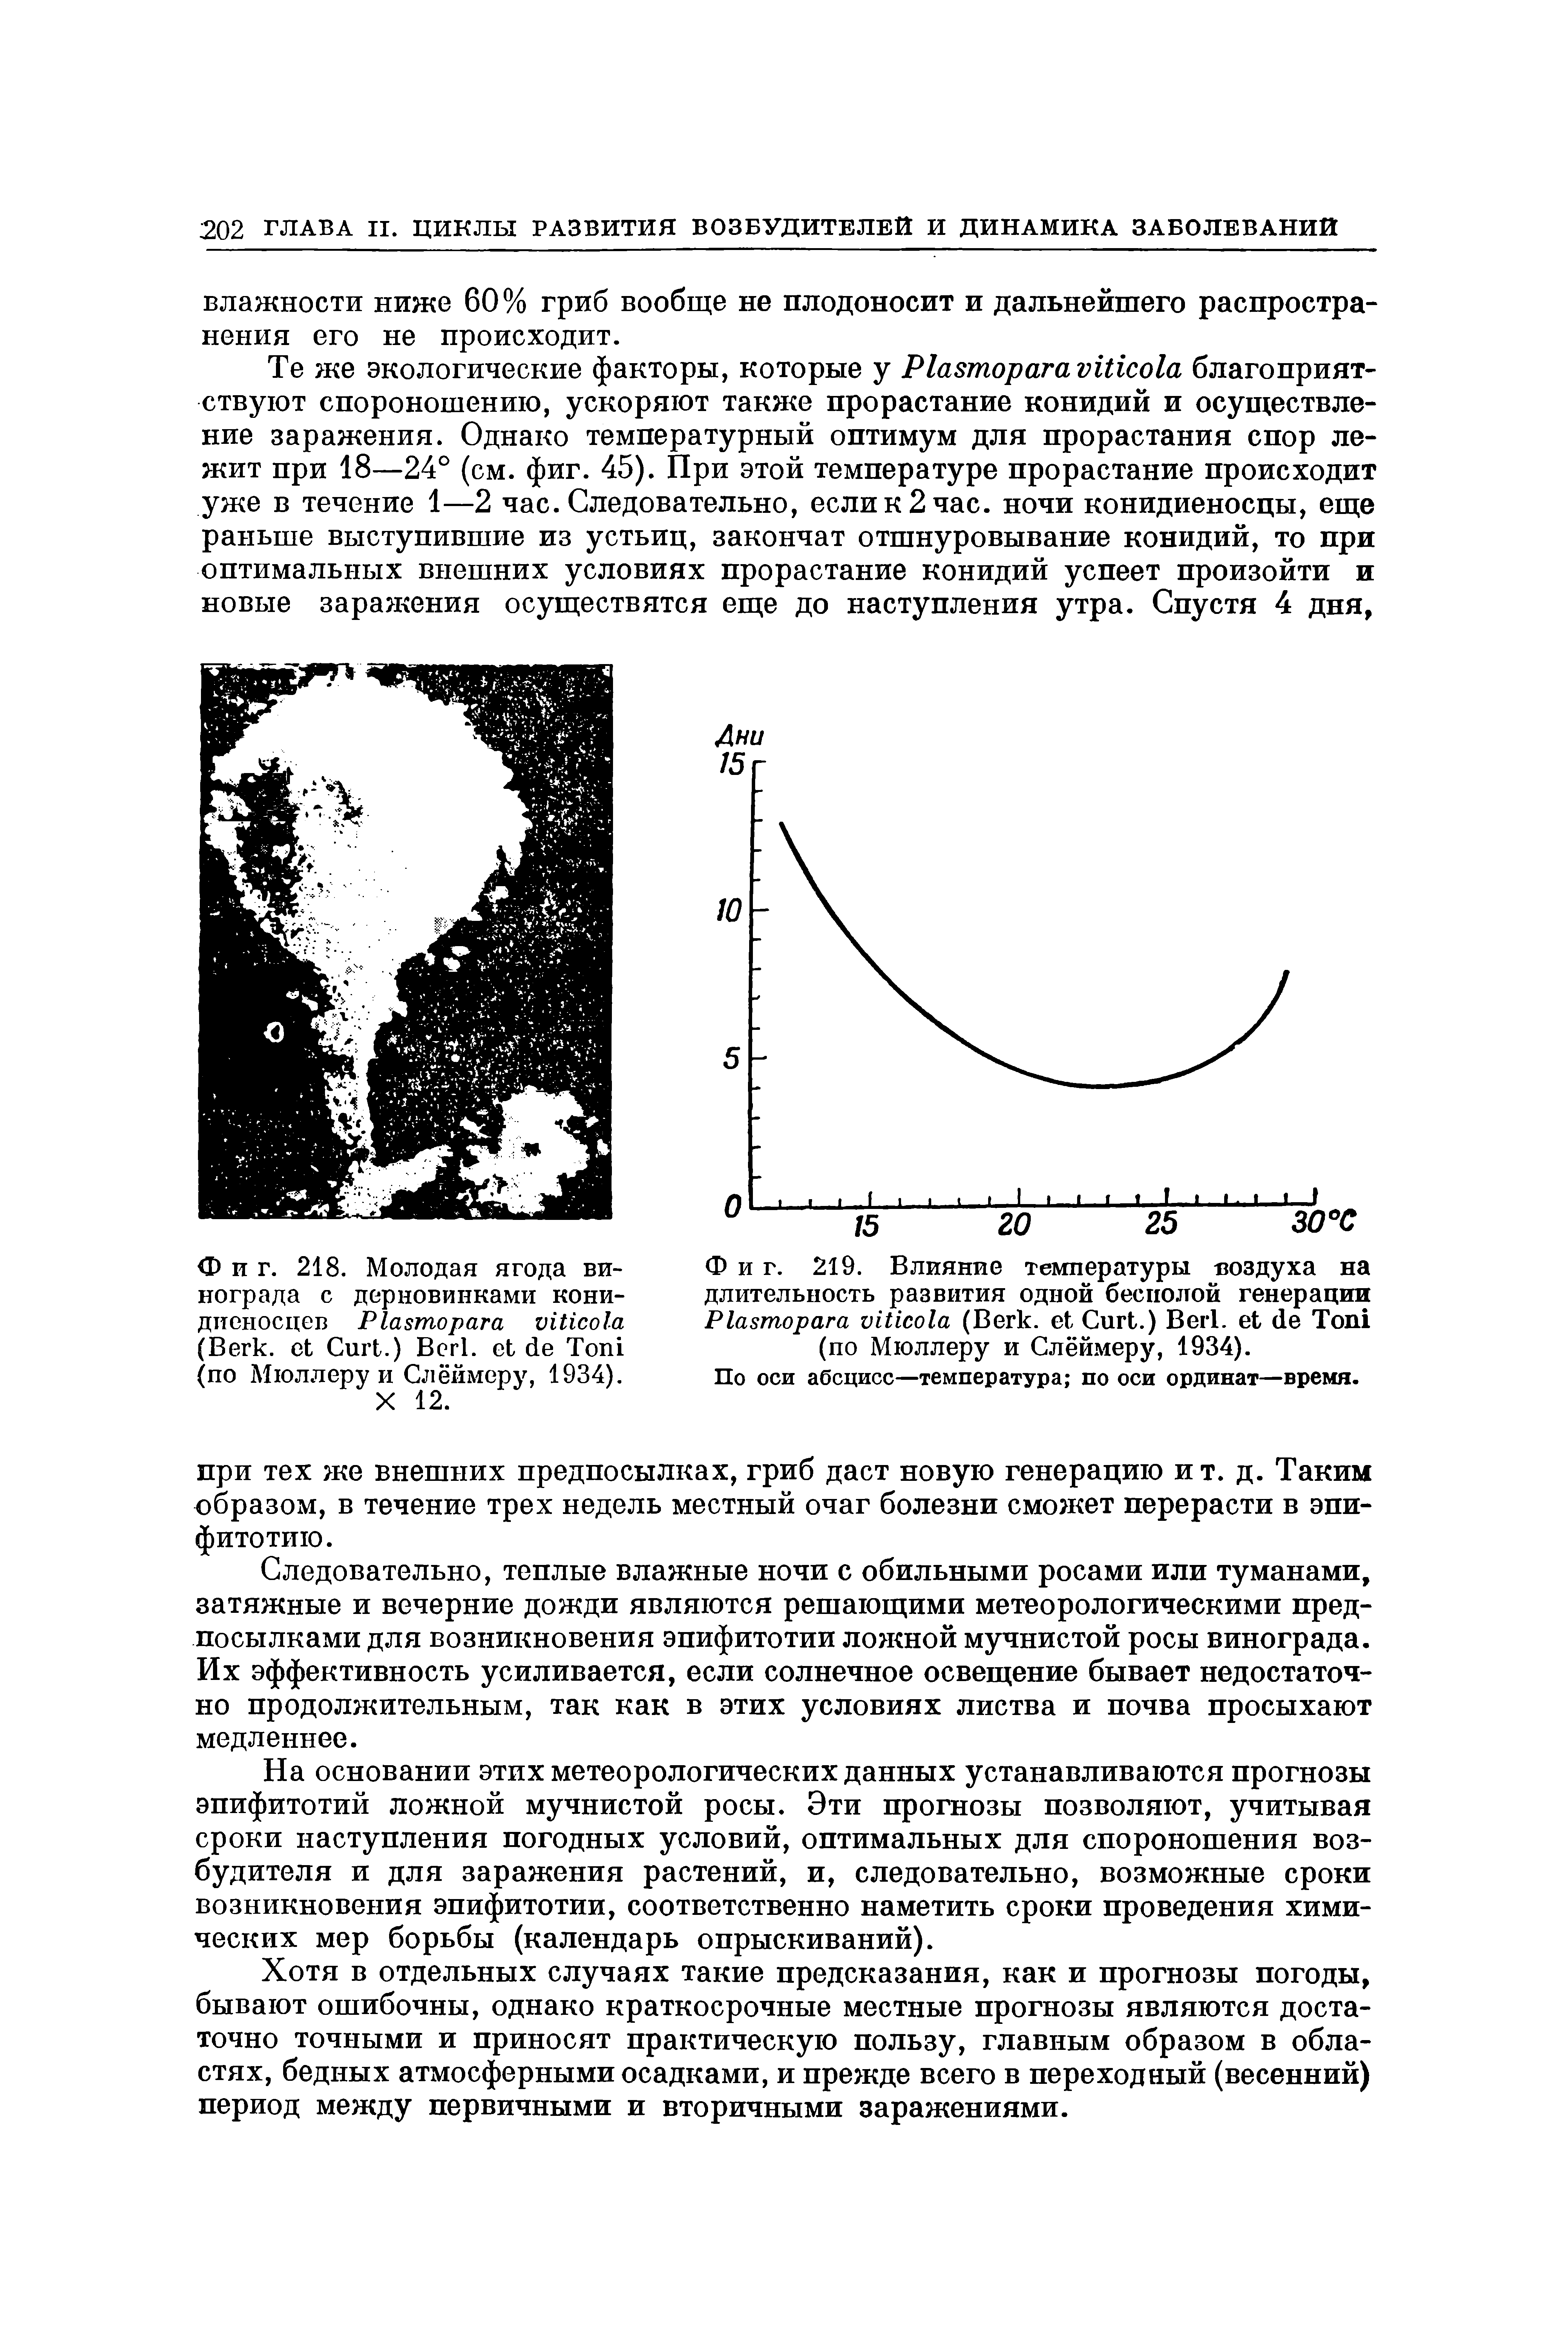 Фиг. 219. Влияние температуры воздуха на длительность развития одной бесполой генерации P (B , C .) B . T (по Мюллеру и Слёймеру, 1934).